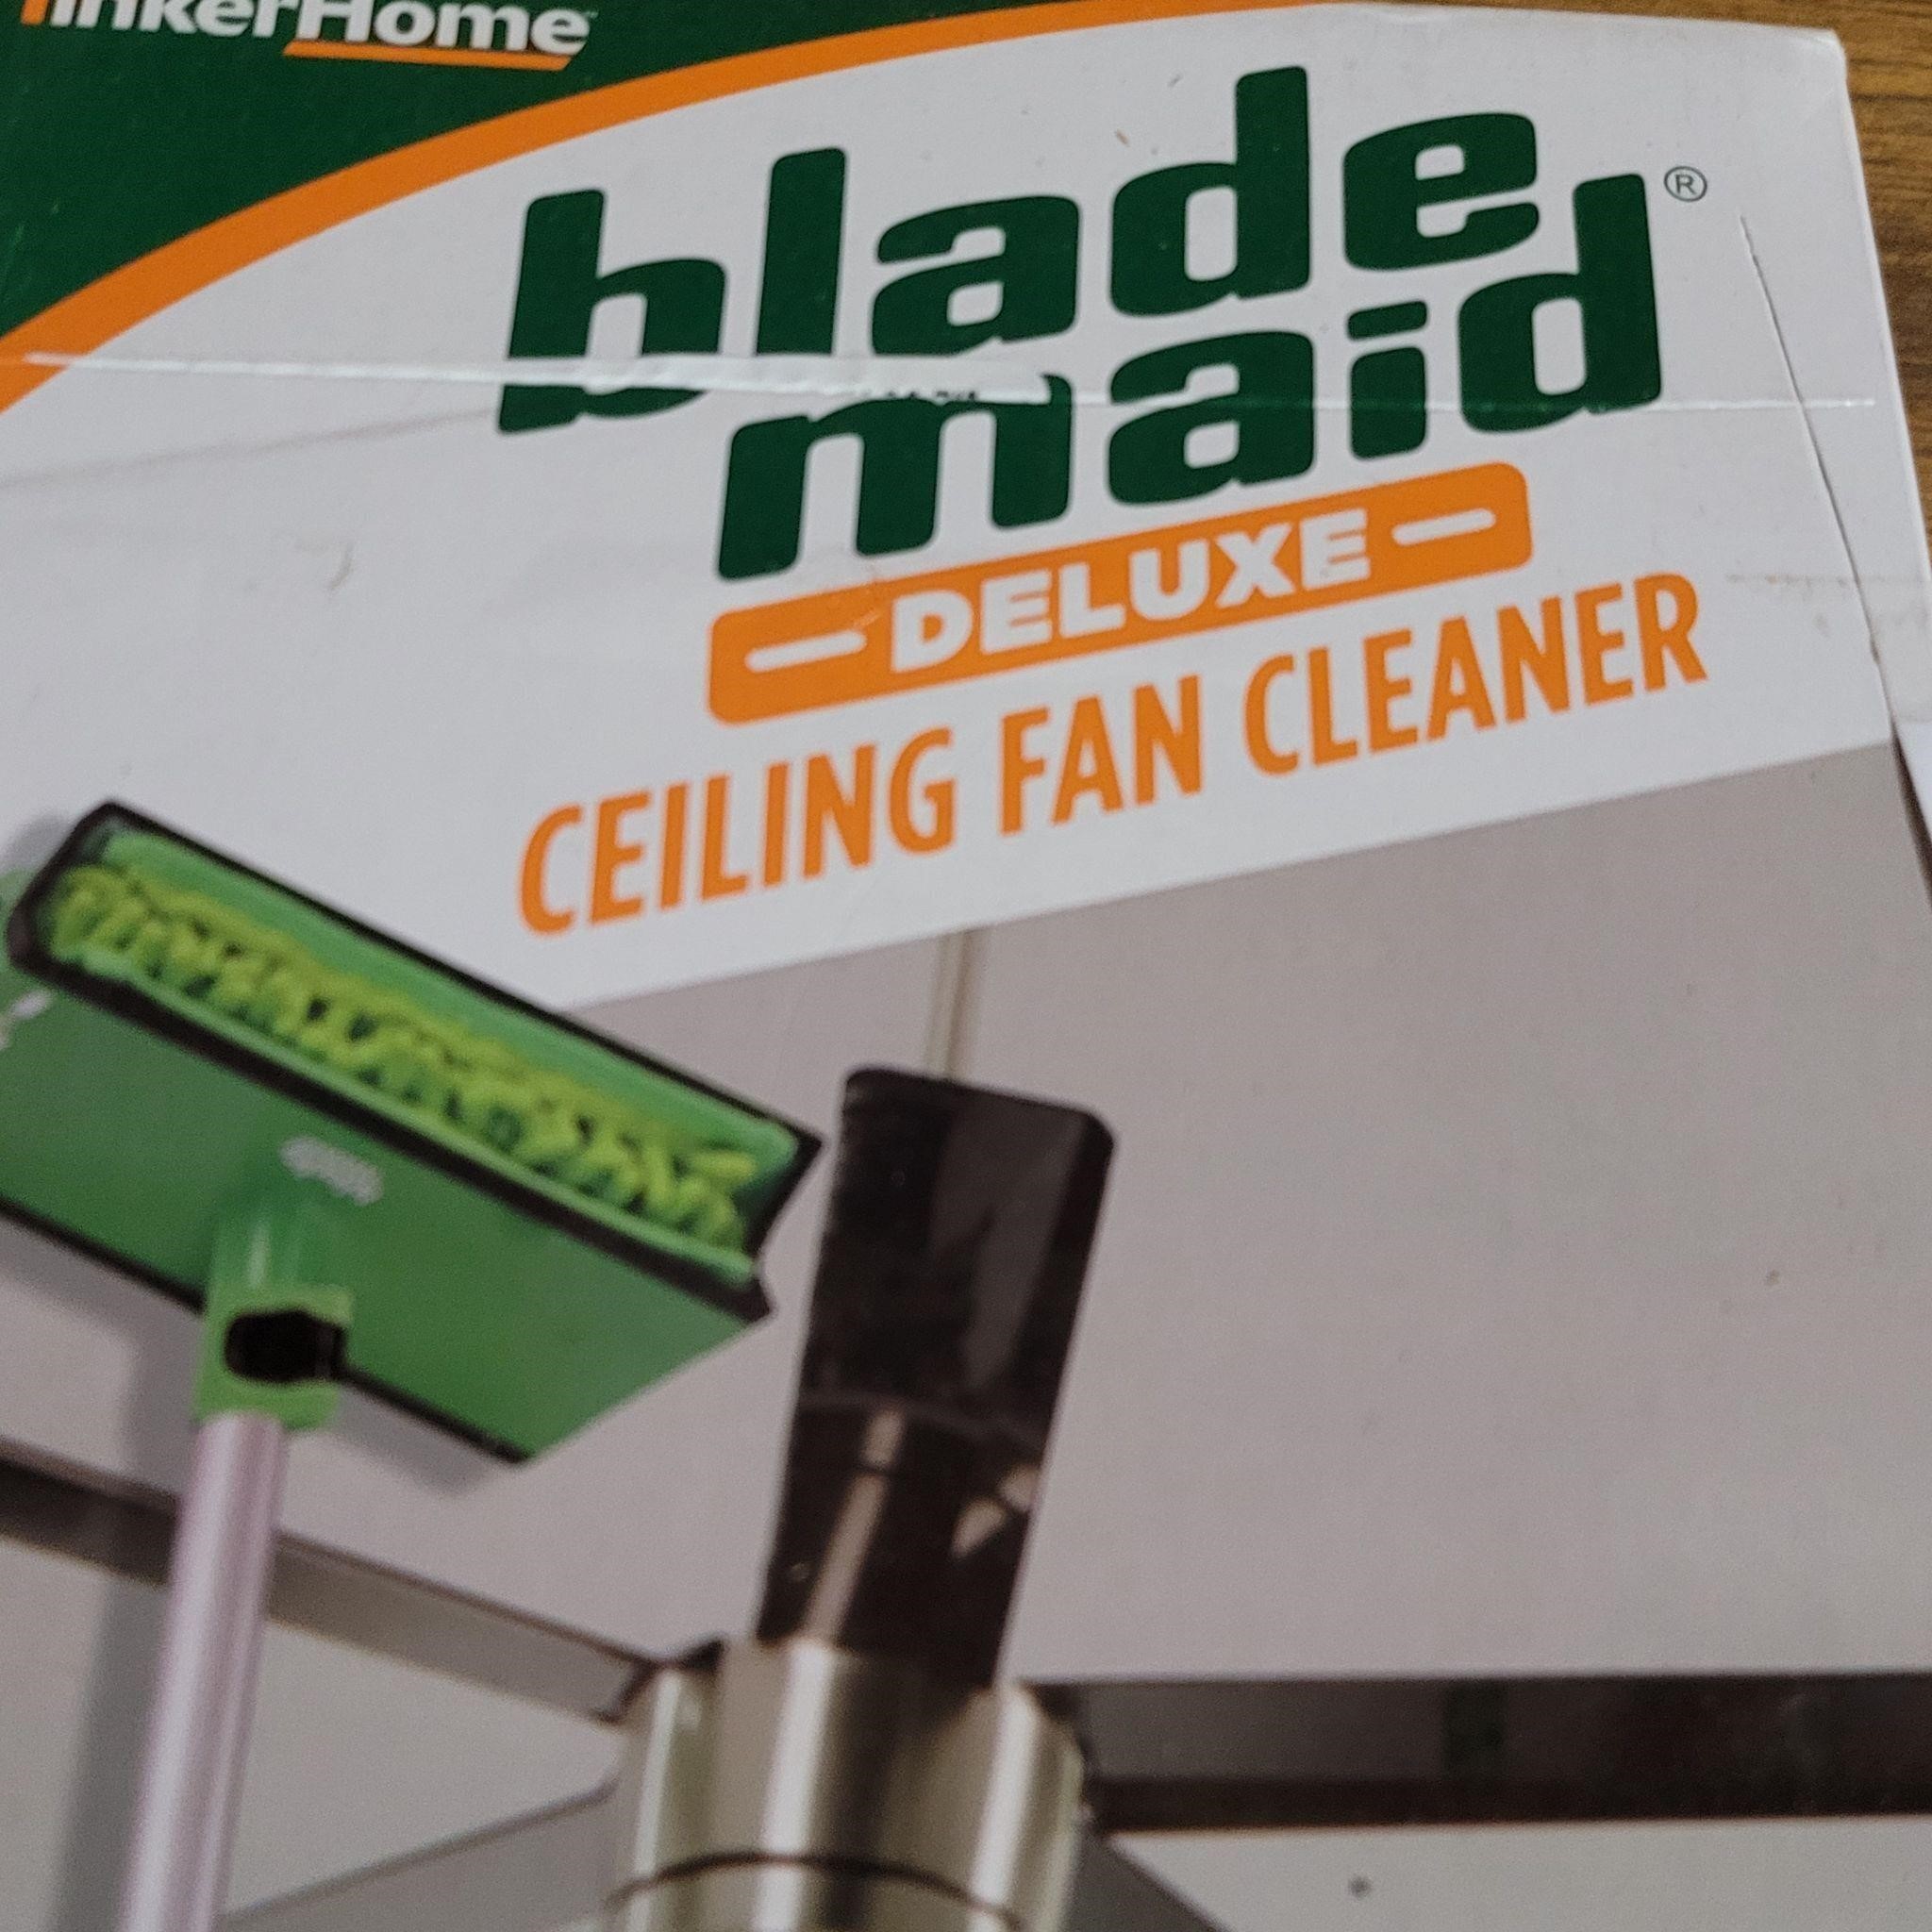 Ceiling Fan Cleaner